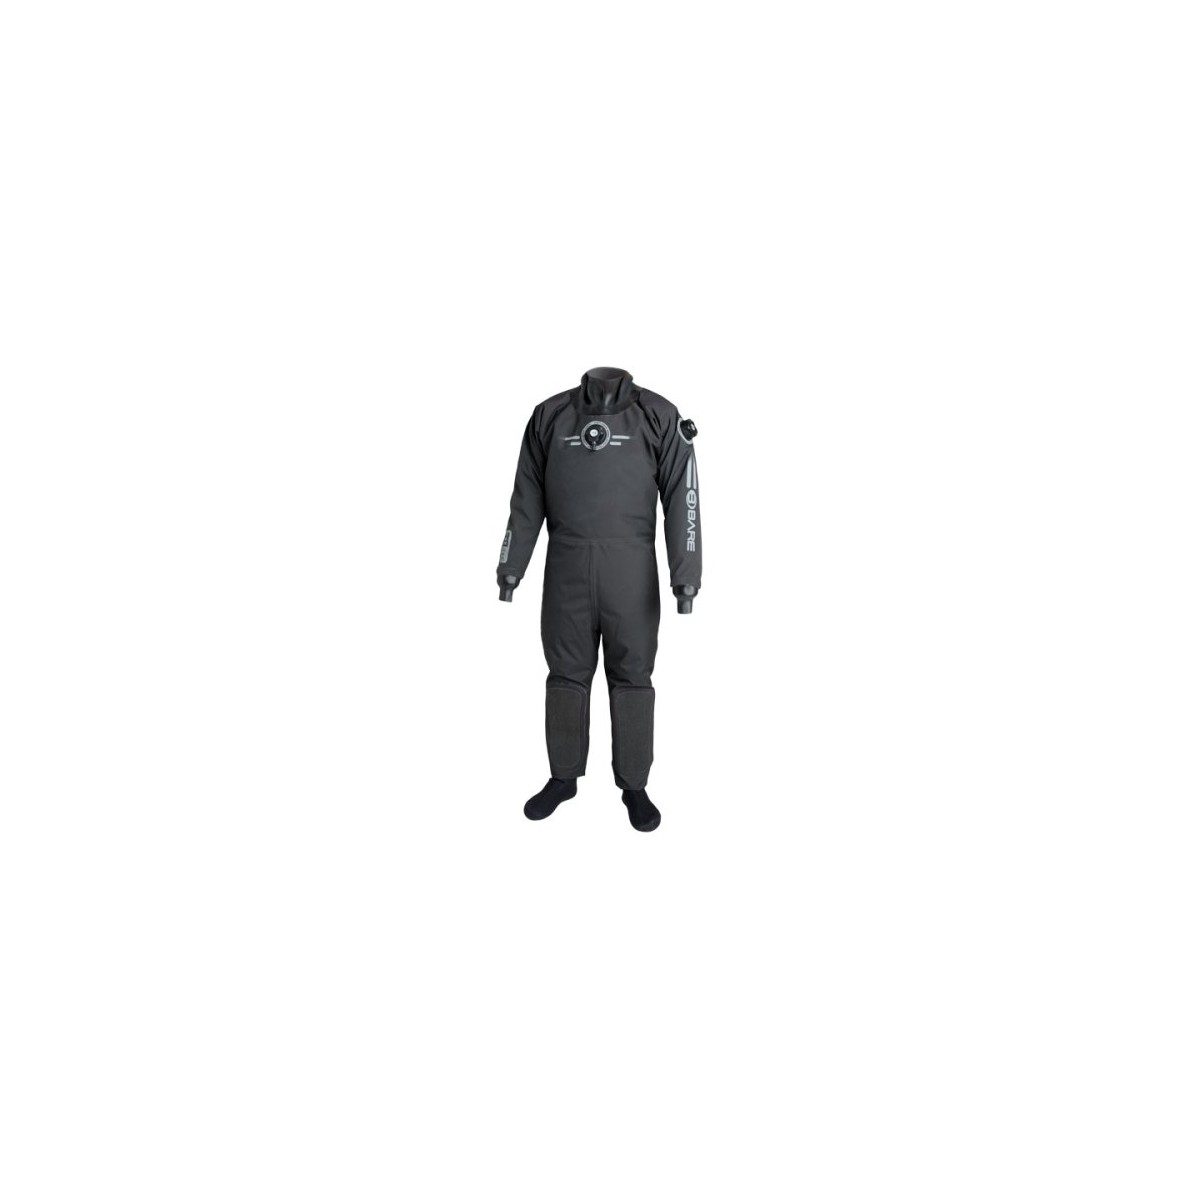 Bare Nex-Gen Pro DrySuit With Lifetime Guarantee Dry Suit Authorized Dealer Full Warranty